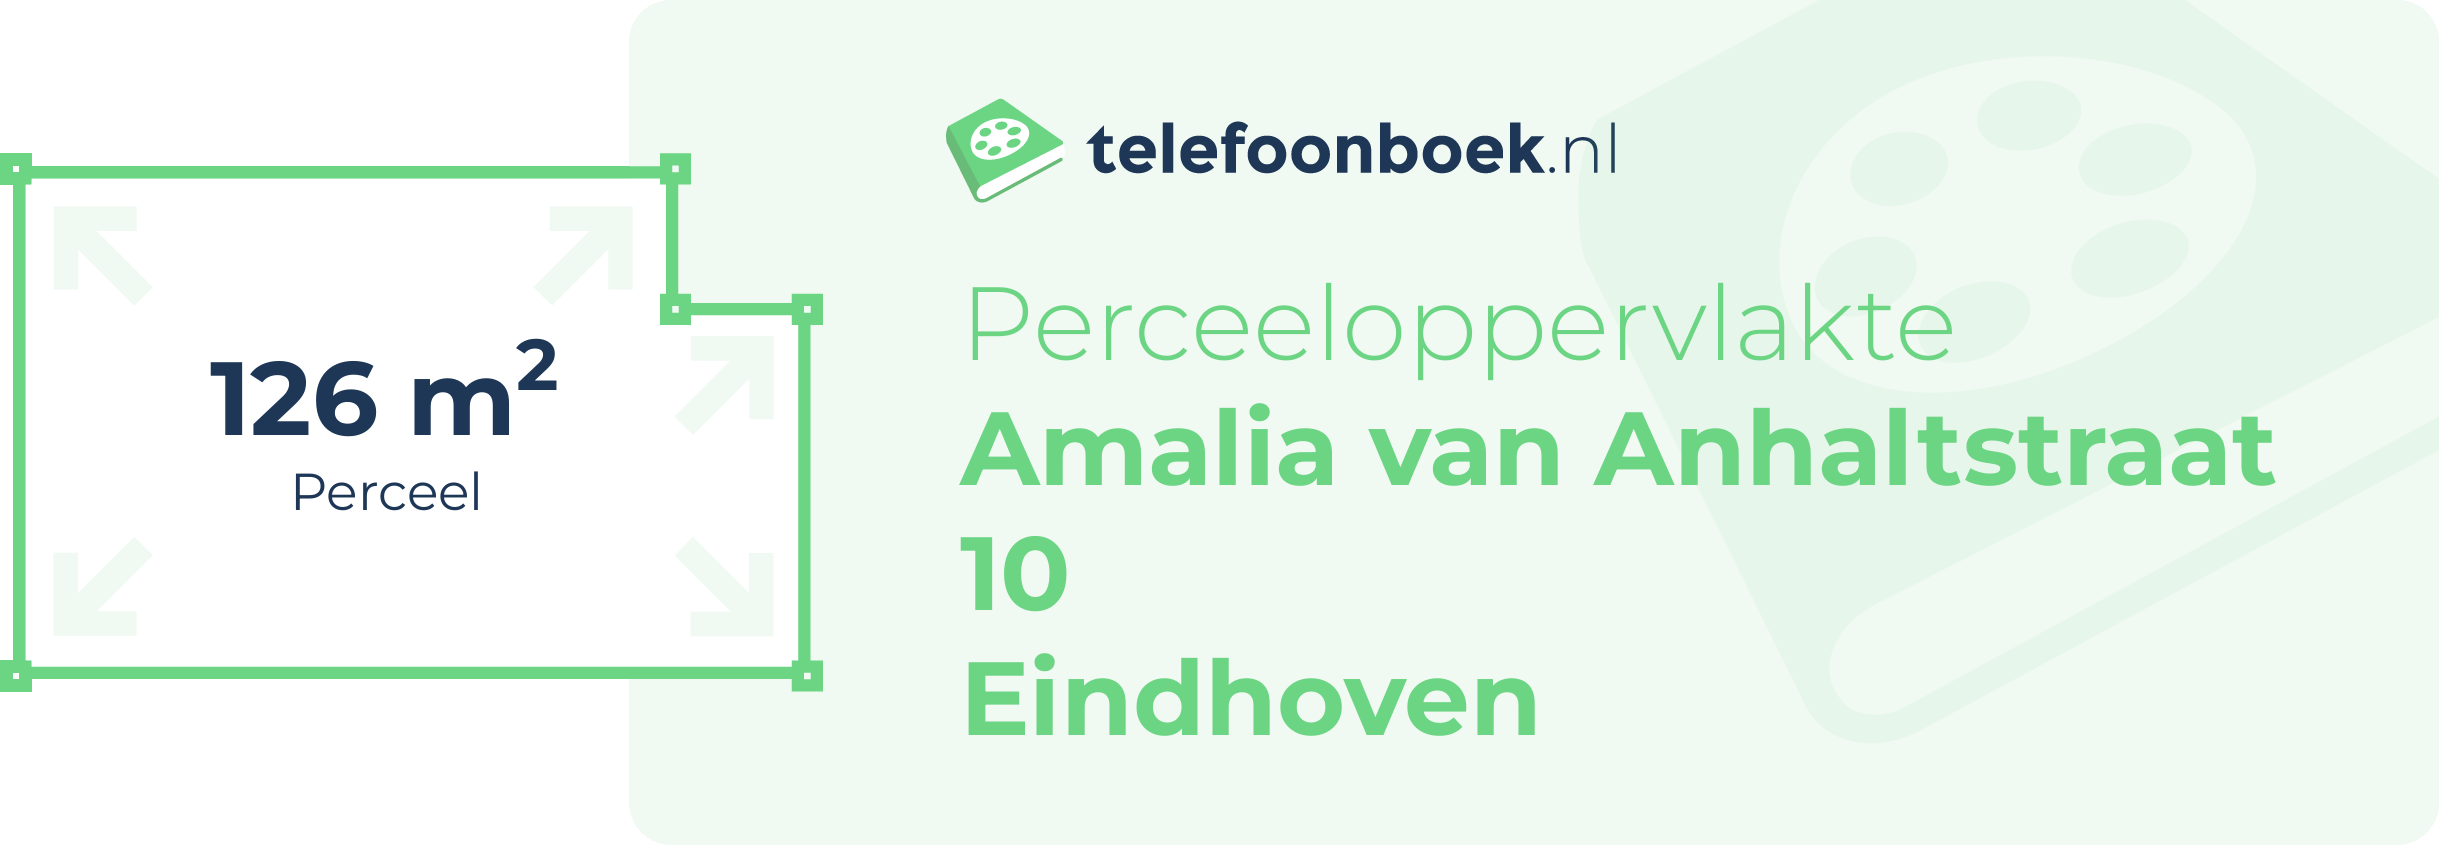 Perceeloppervlakte Amalia Van Anhaltstraat 10 Eindhoven